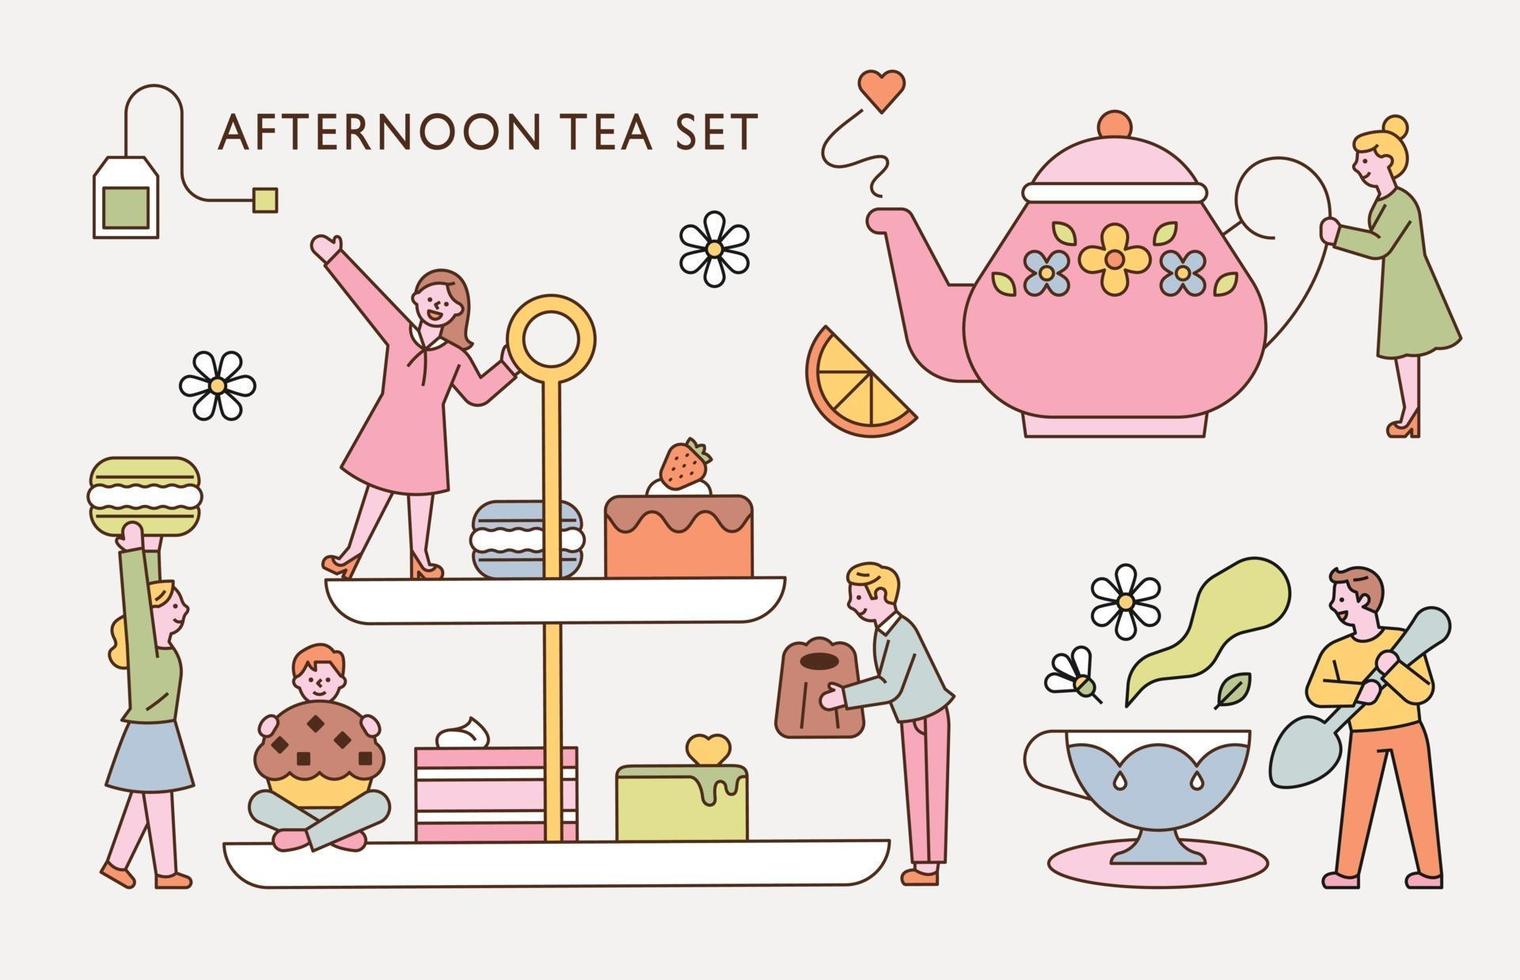 le piccole persone stanno gustando il tè del pomeriggio con un enorme servizio da tè. illustrazione di vettore minimo di stile di design piatto.